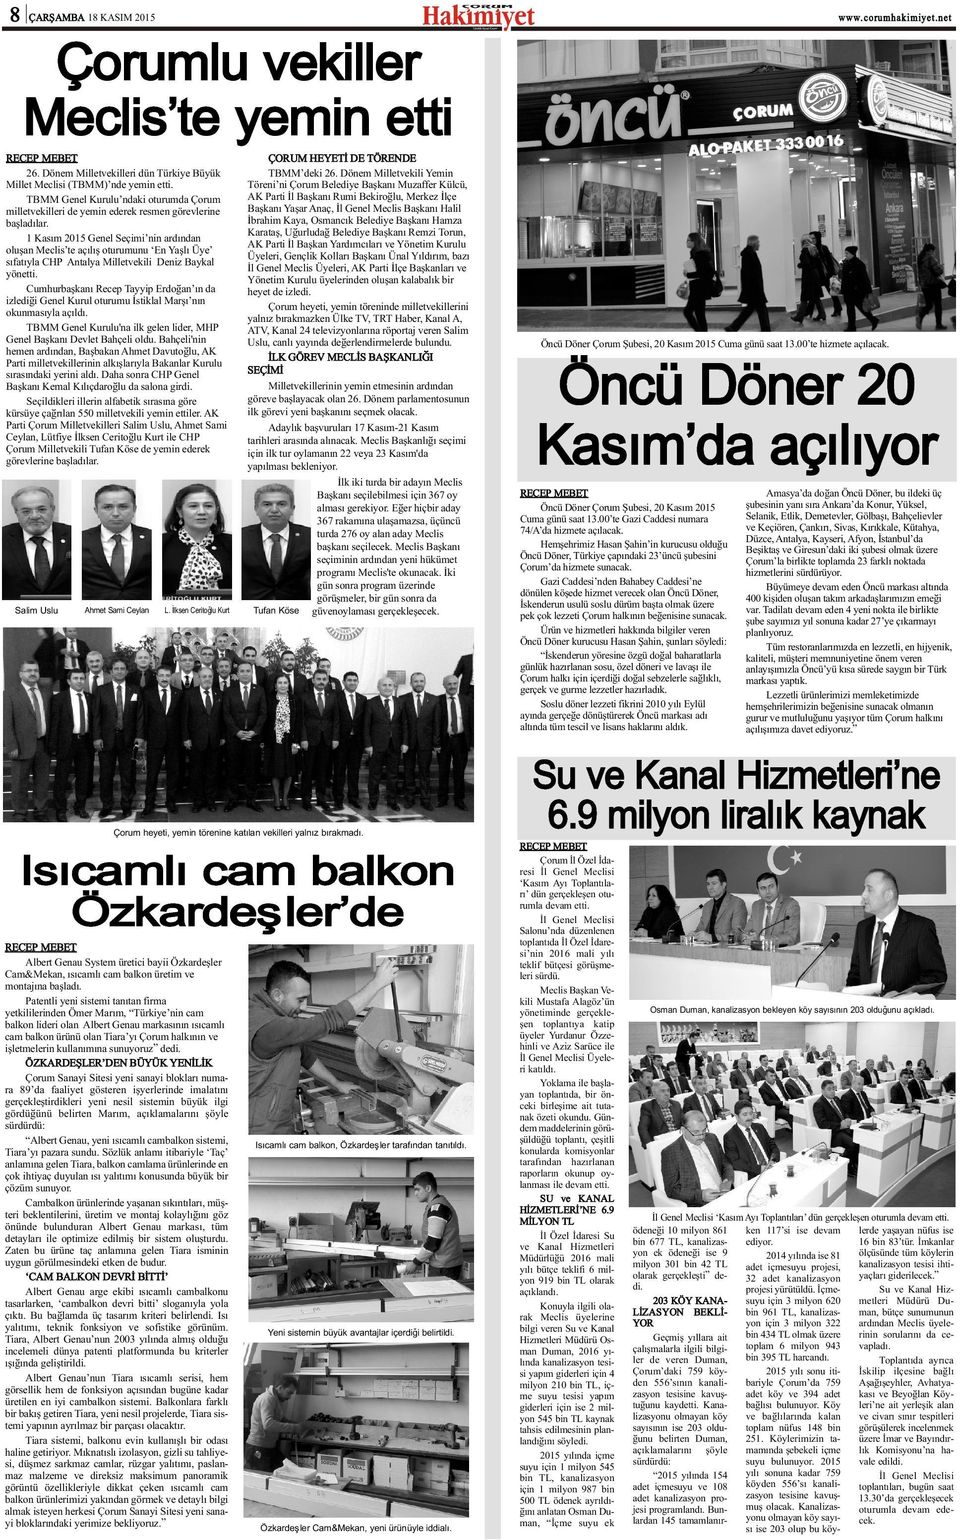 1 Kasým 01 Genel Seçimi nin ardýndan oluþan Meclis te açýlýþ oturumunu En Yaþlý Üye sýfatýyla CHP Antalya Milletvekili Deniz Baykal yönetti.